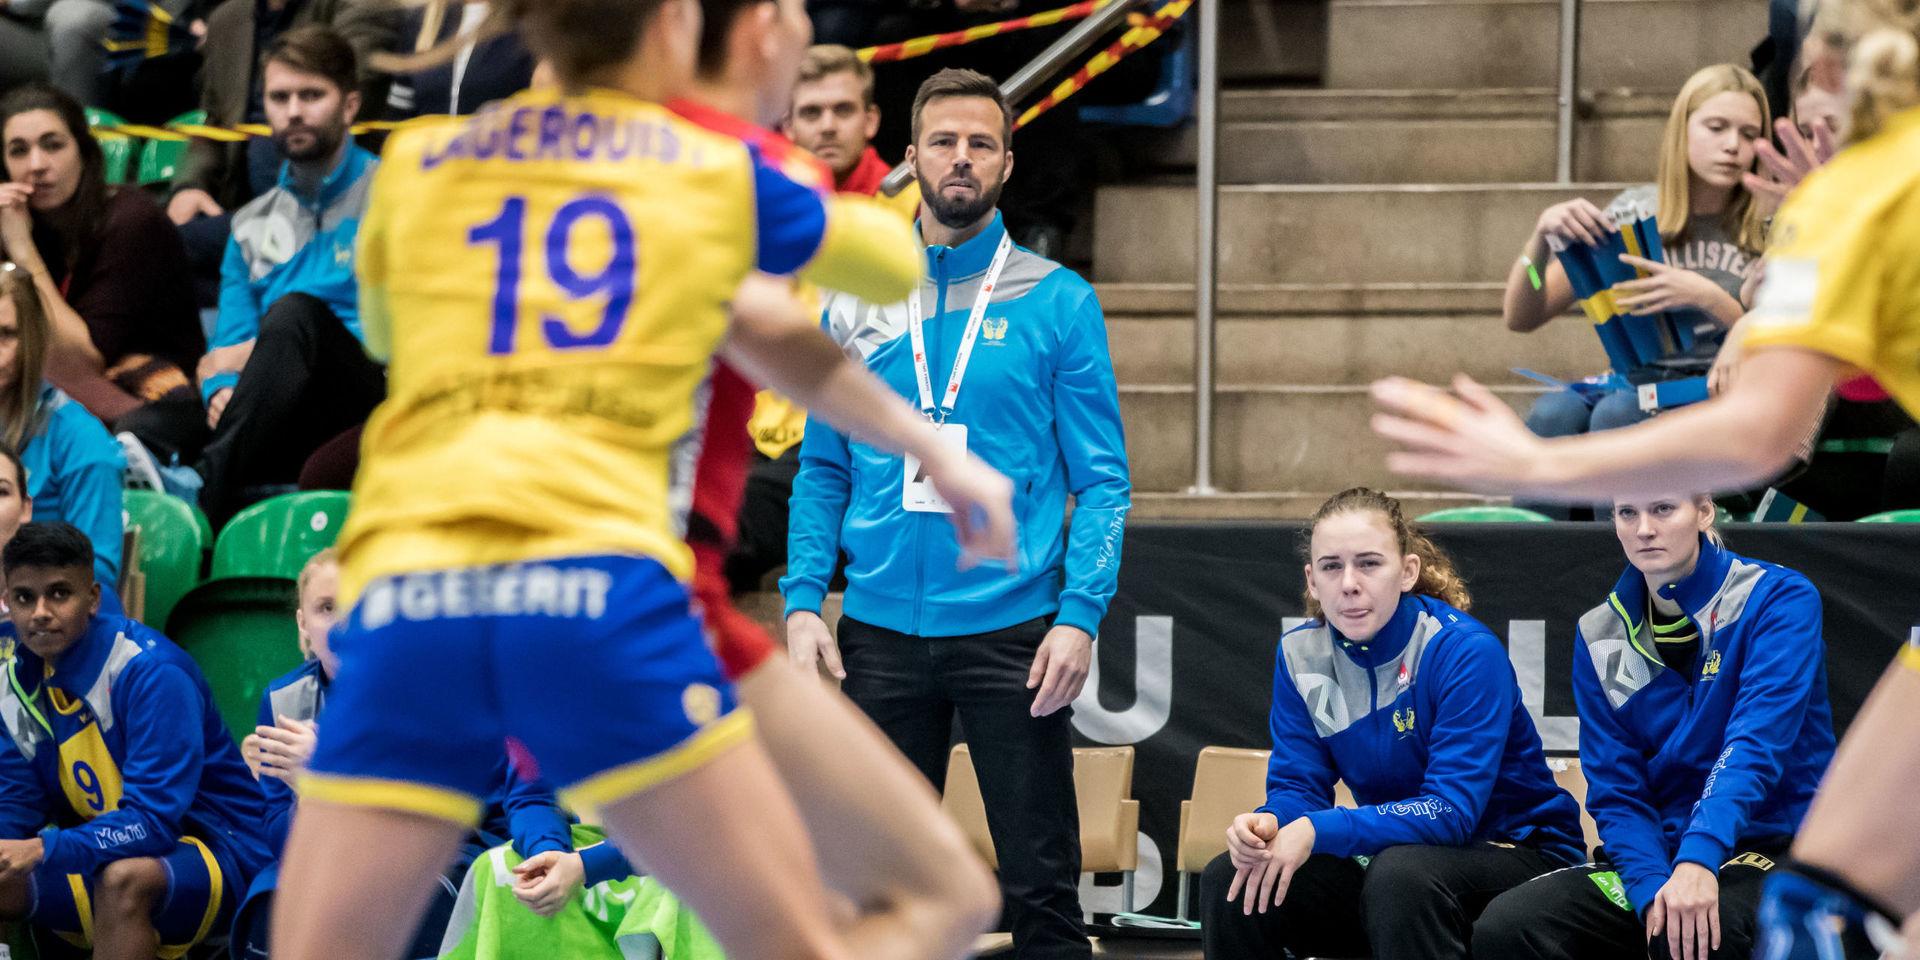 Henrik Signells Sverige förlorade den första av två matcher mot Montenegro. I söndagens retur hoppas målvakten Johanna Bundsen (längst till höger) på speltid.